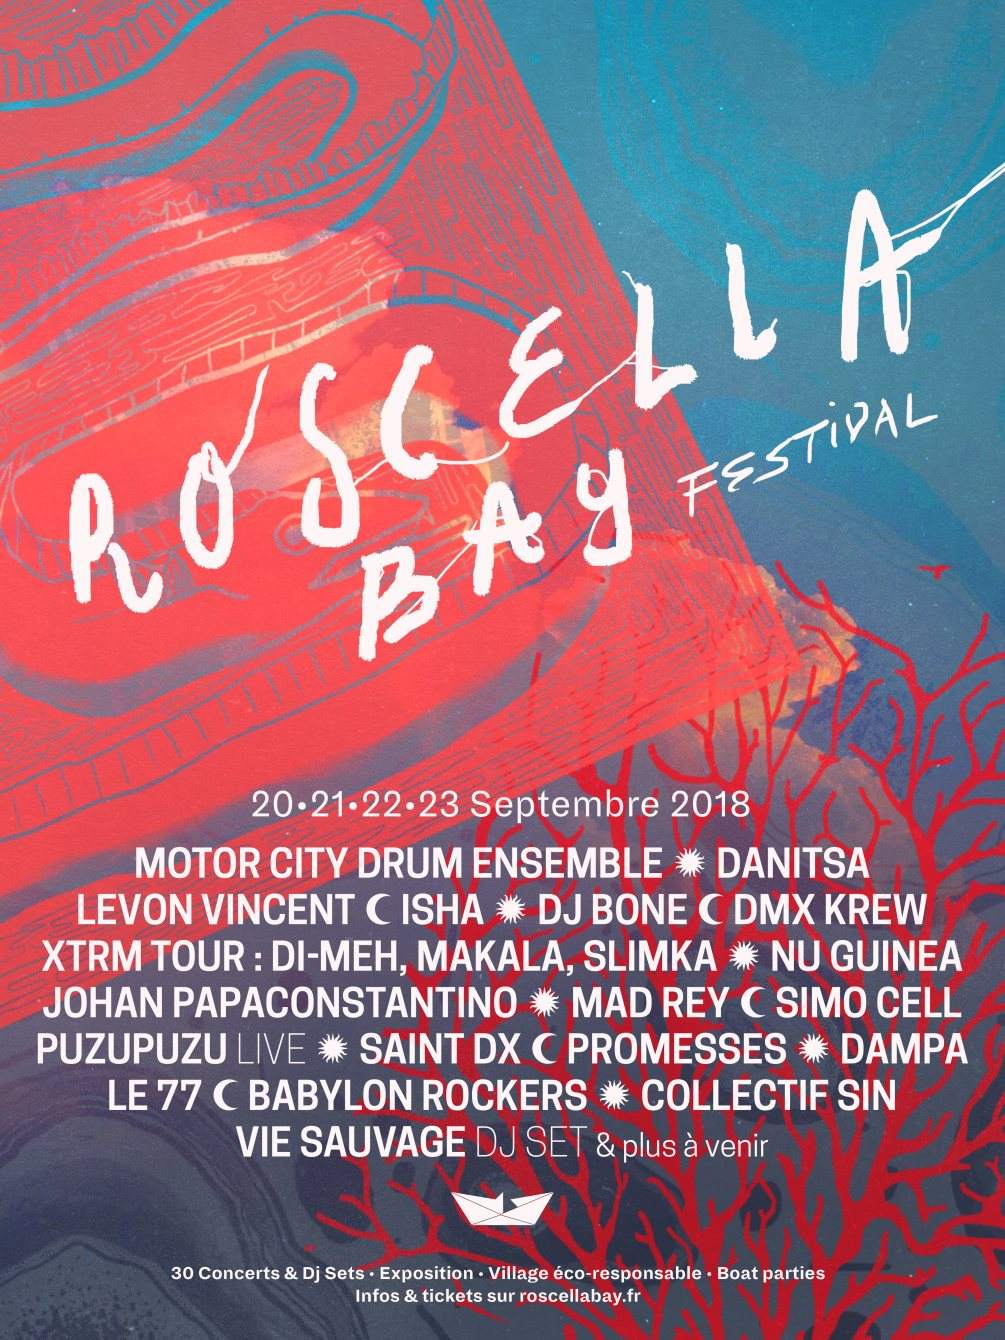 Roscella Bay Festival - Página trasera